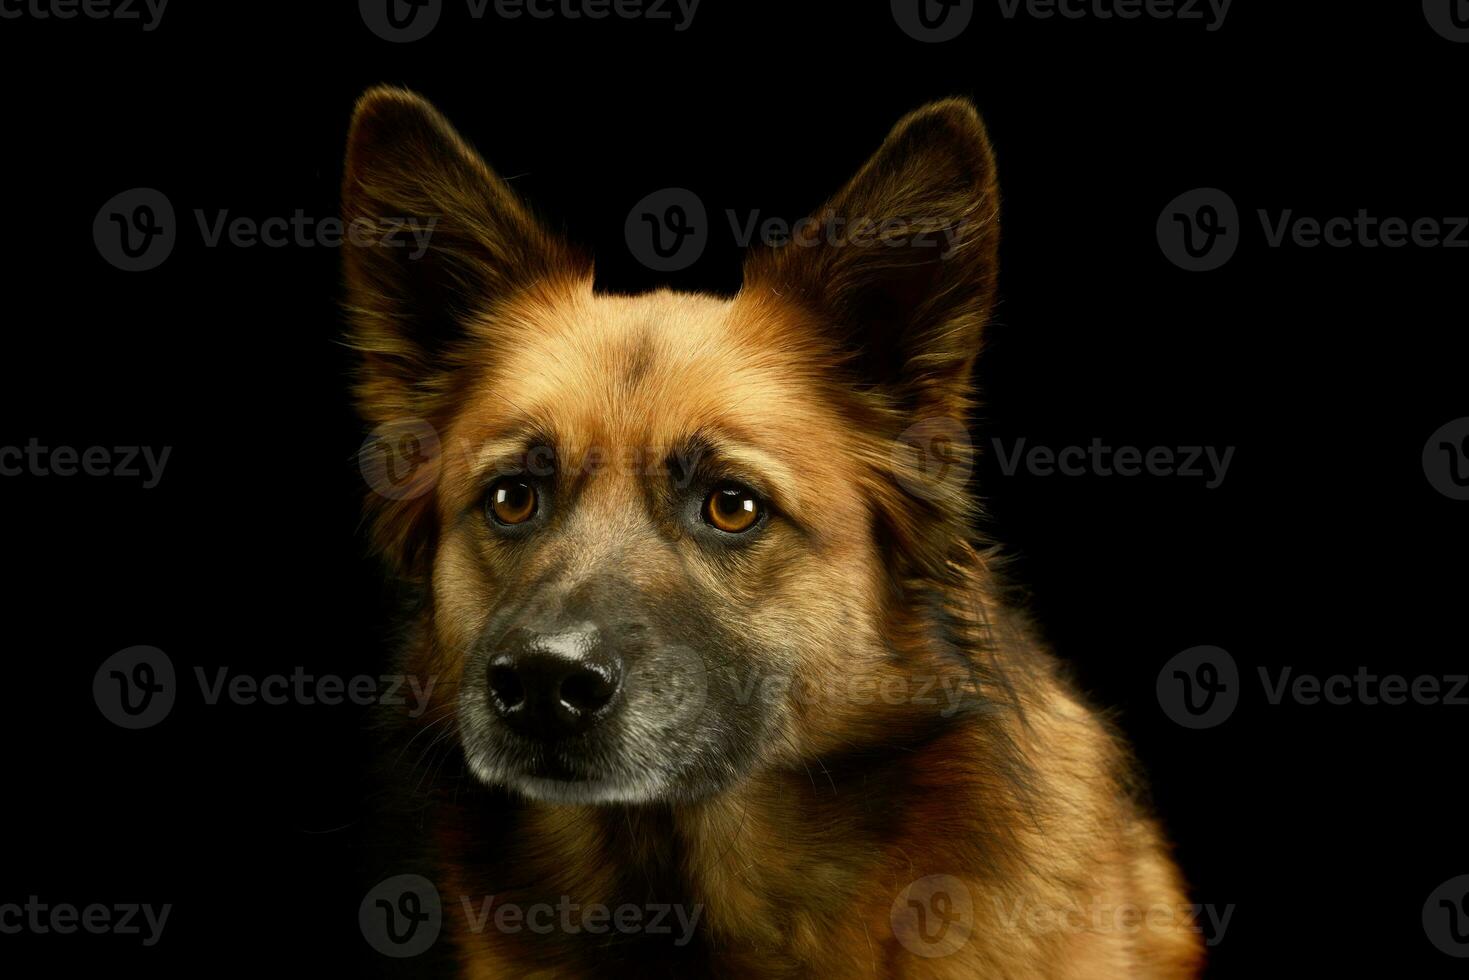 Porträt von ein bezaubernd gemischt Rasse Hund foto